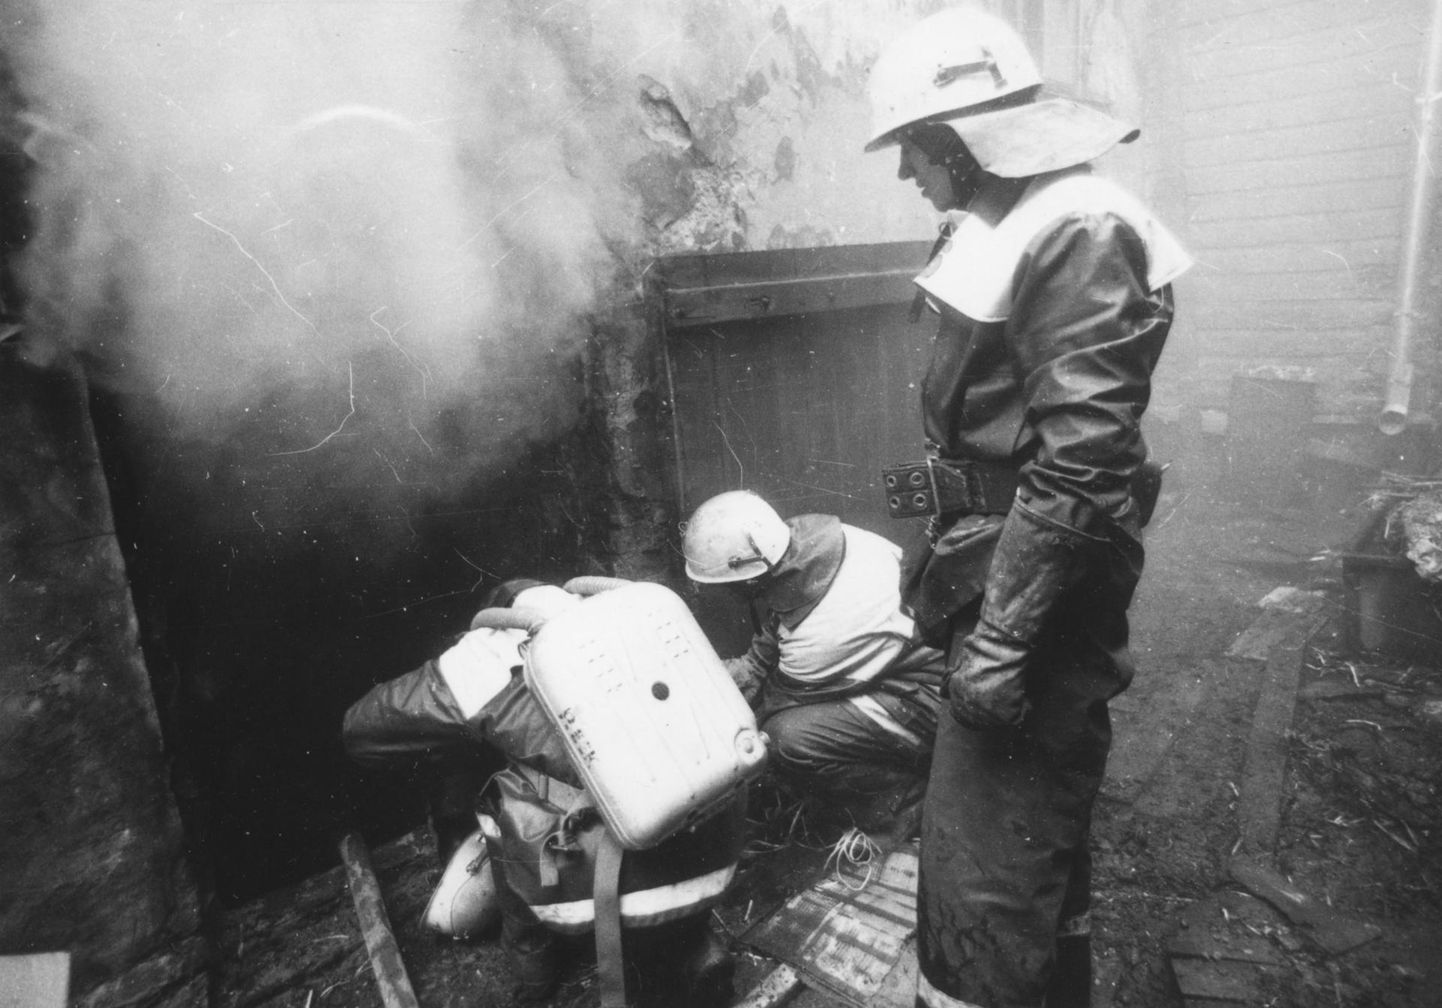 Tuletõrjujate varustus polnud 1990-ndatel loomulikult selline nagu praegu, kuid kõigest hoolimata tegid mehed oma rasket ja tänuväärset tööd, päästes inimelusid.